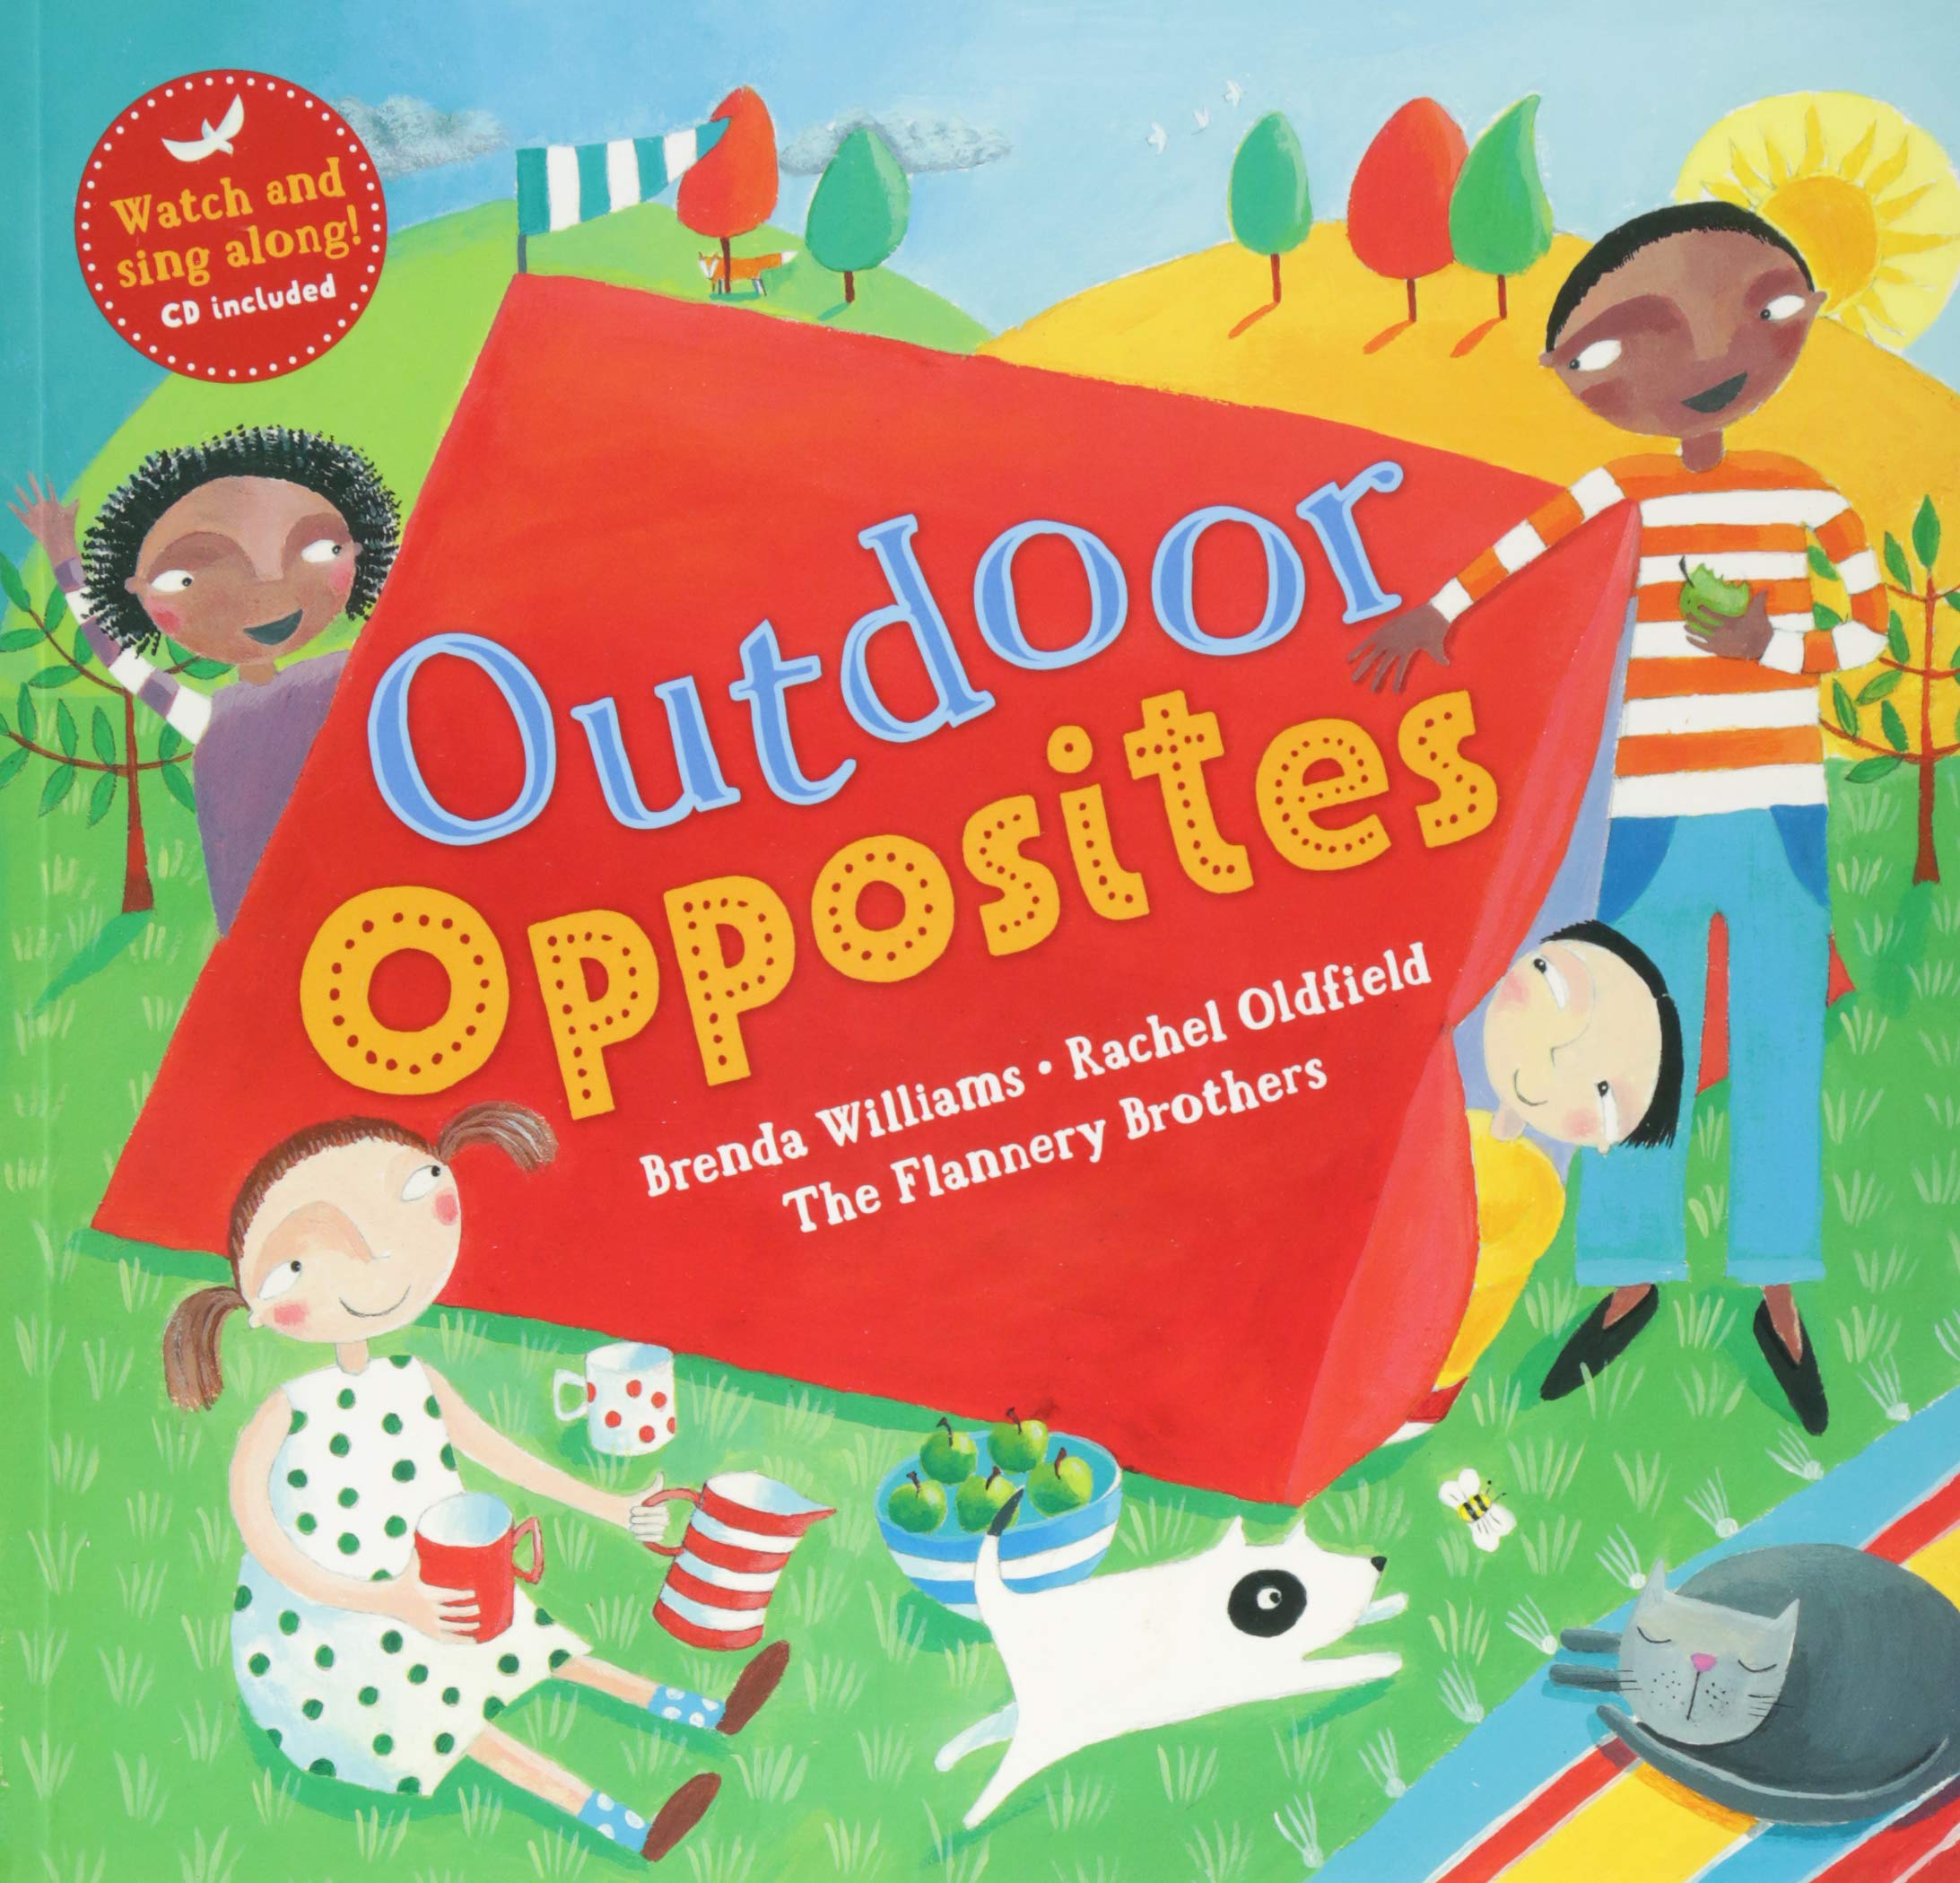 Outdoor Opposites - Brenda Williams and Rachel Oldfield